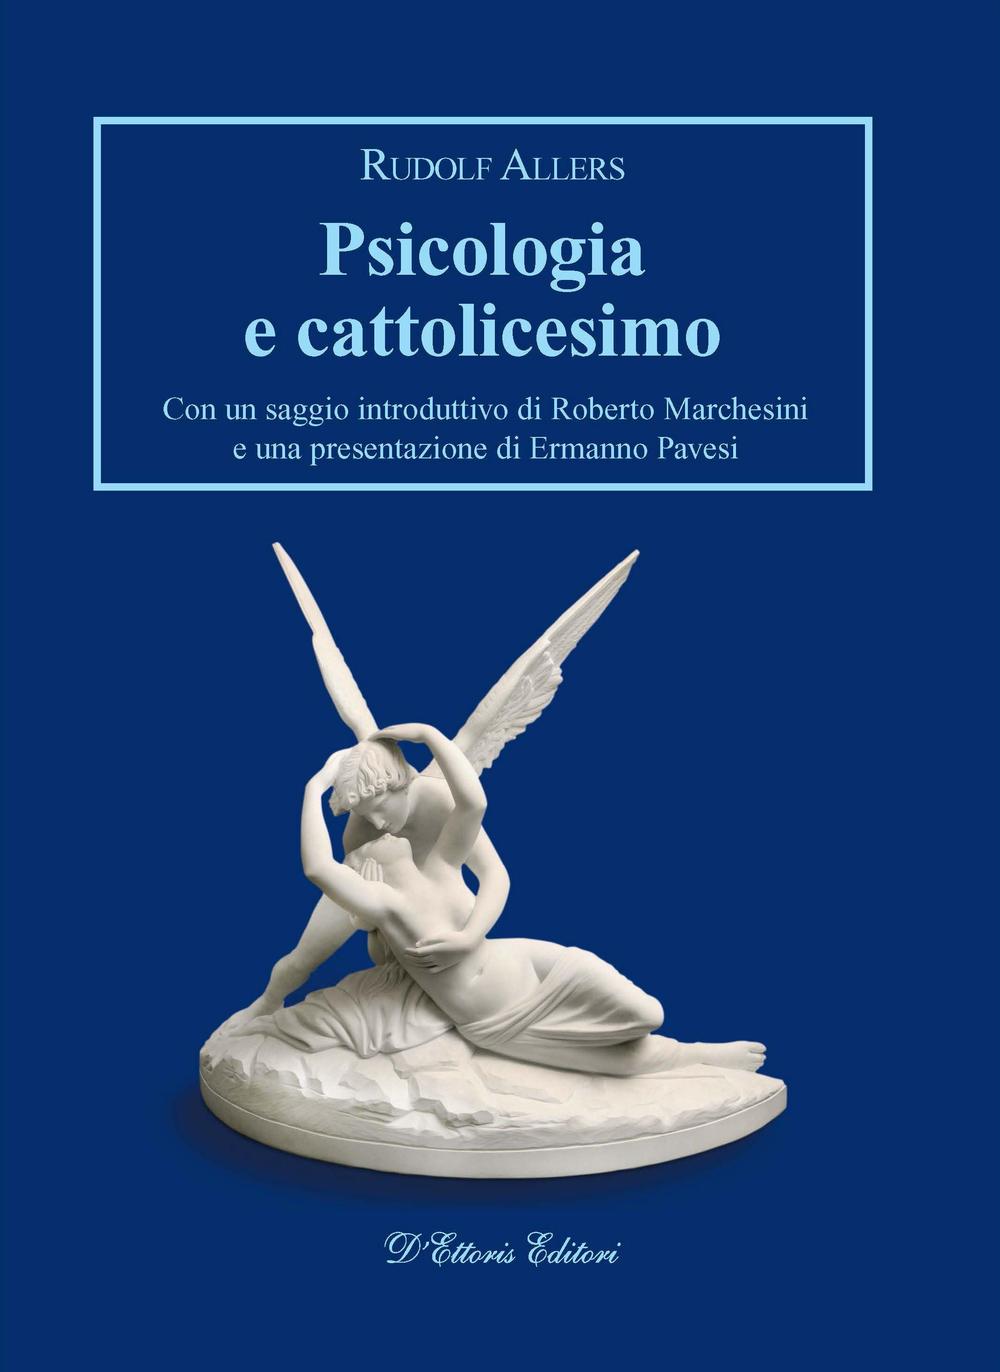 Psicologia e cattolicesimo